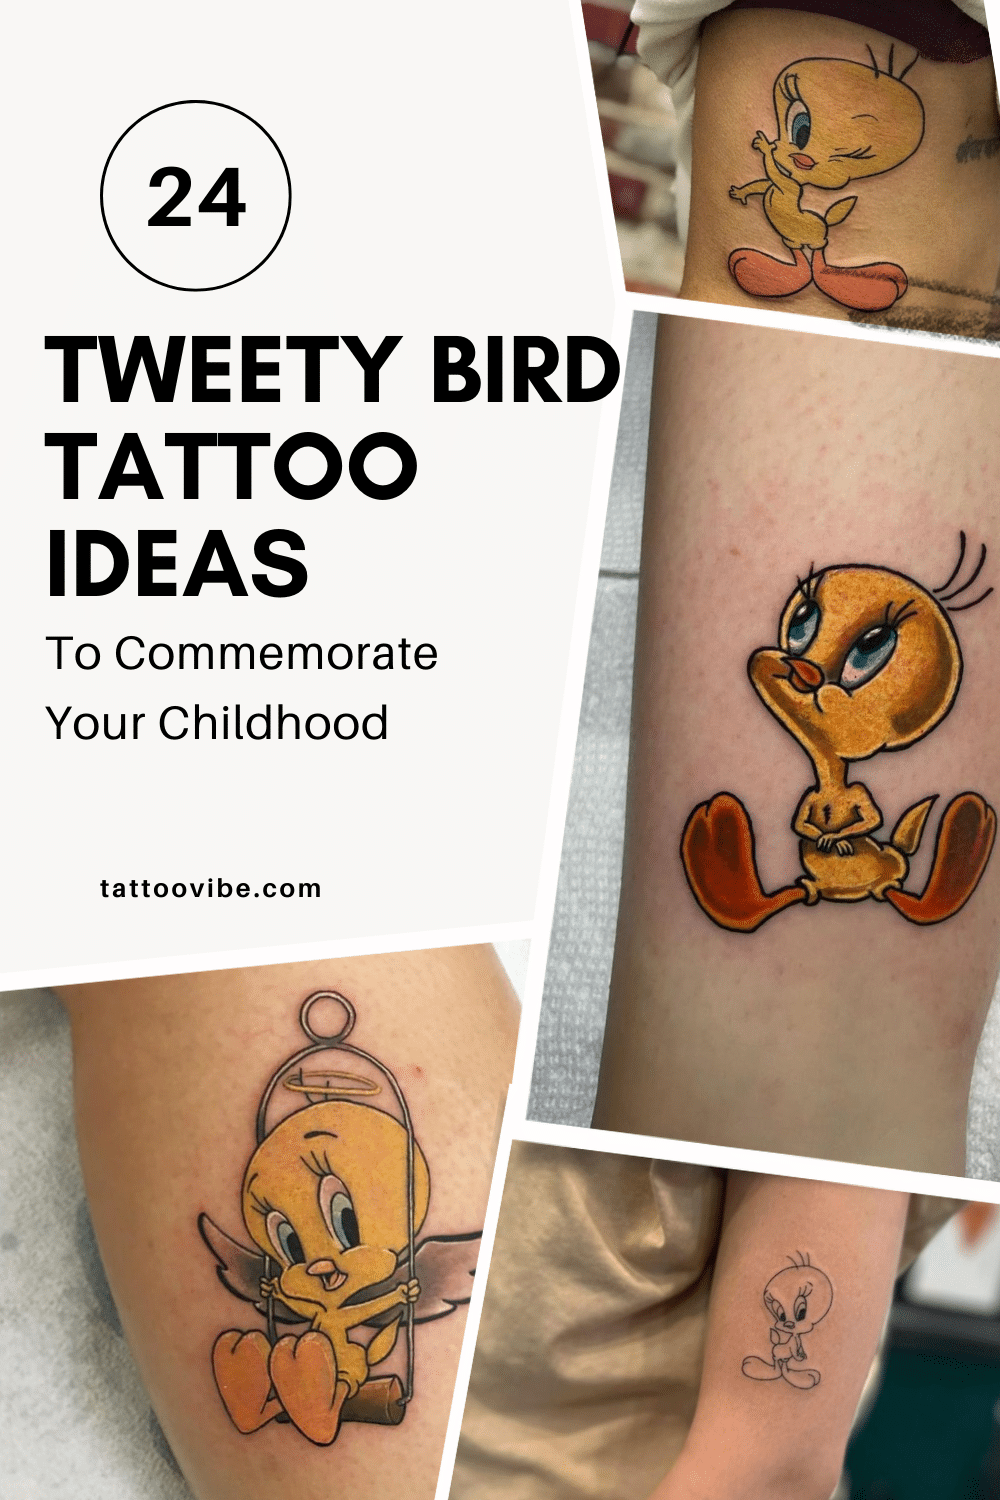 24 idées de tatouage de l'oiseau Tweety pour commémorer votre enfance